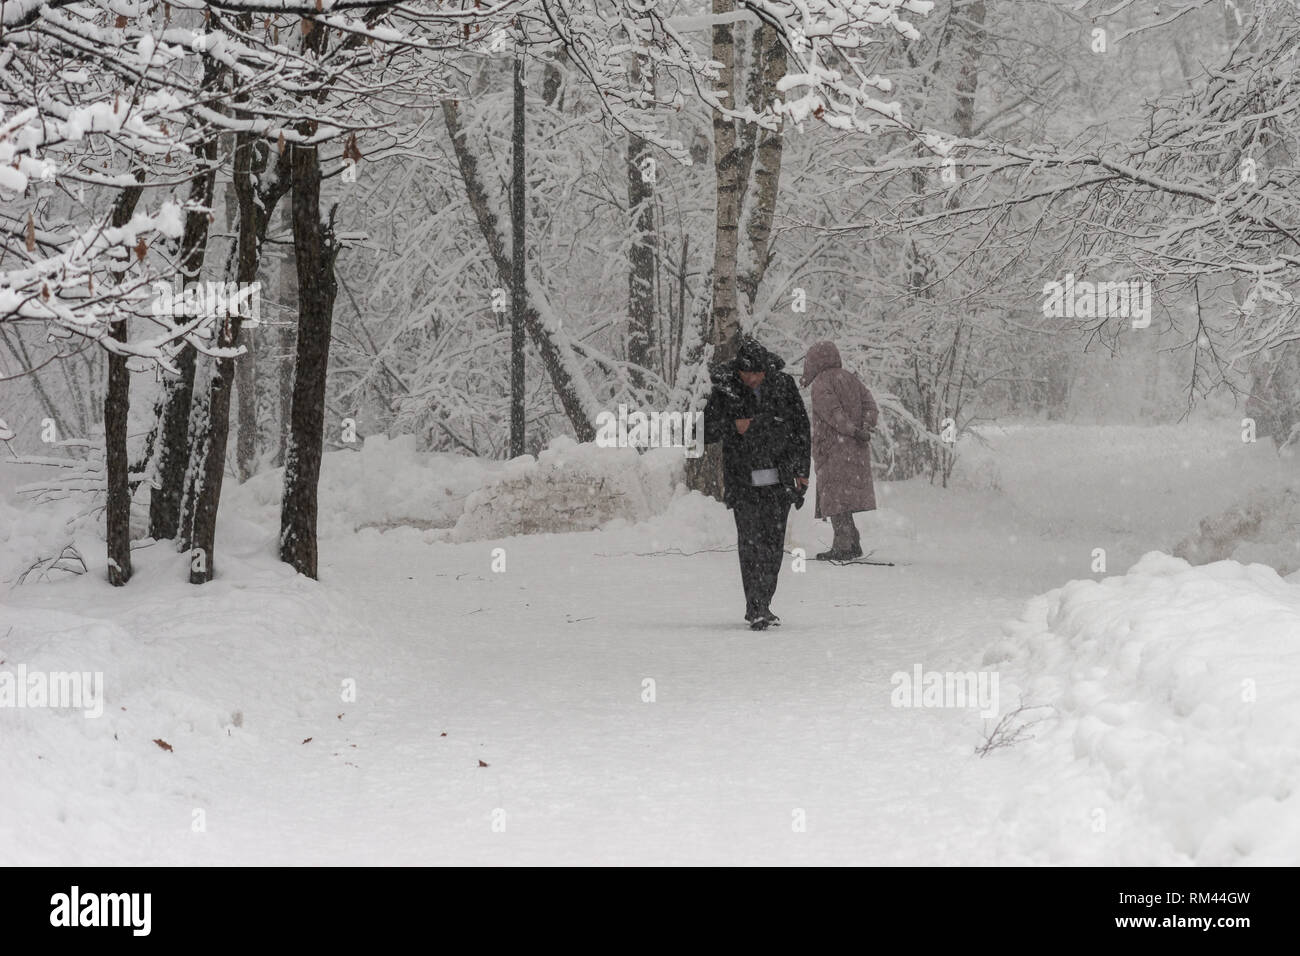 Moskau, Russland. 13. Feb 2019. Russische Wetter, Moskau. Mittwoch, 13.  Februar 2019. Schneesturm, Blizzard in Moskau. Die Temperatur liegt bei ca.  -1 C (+30 F), rauen Wind. Nicht identifizierte, nicht erkennbare Personen